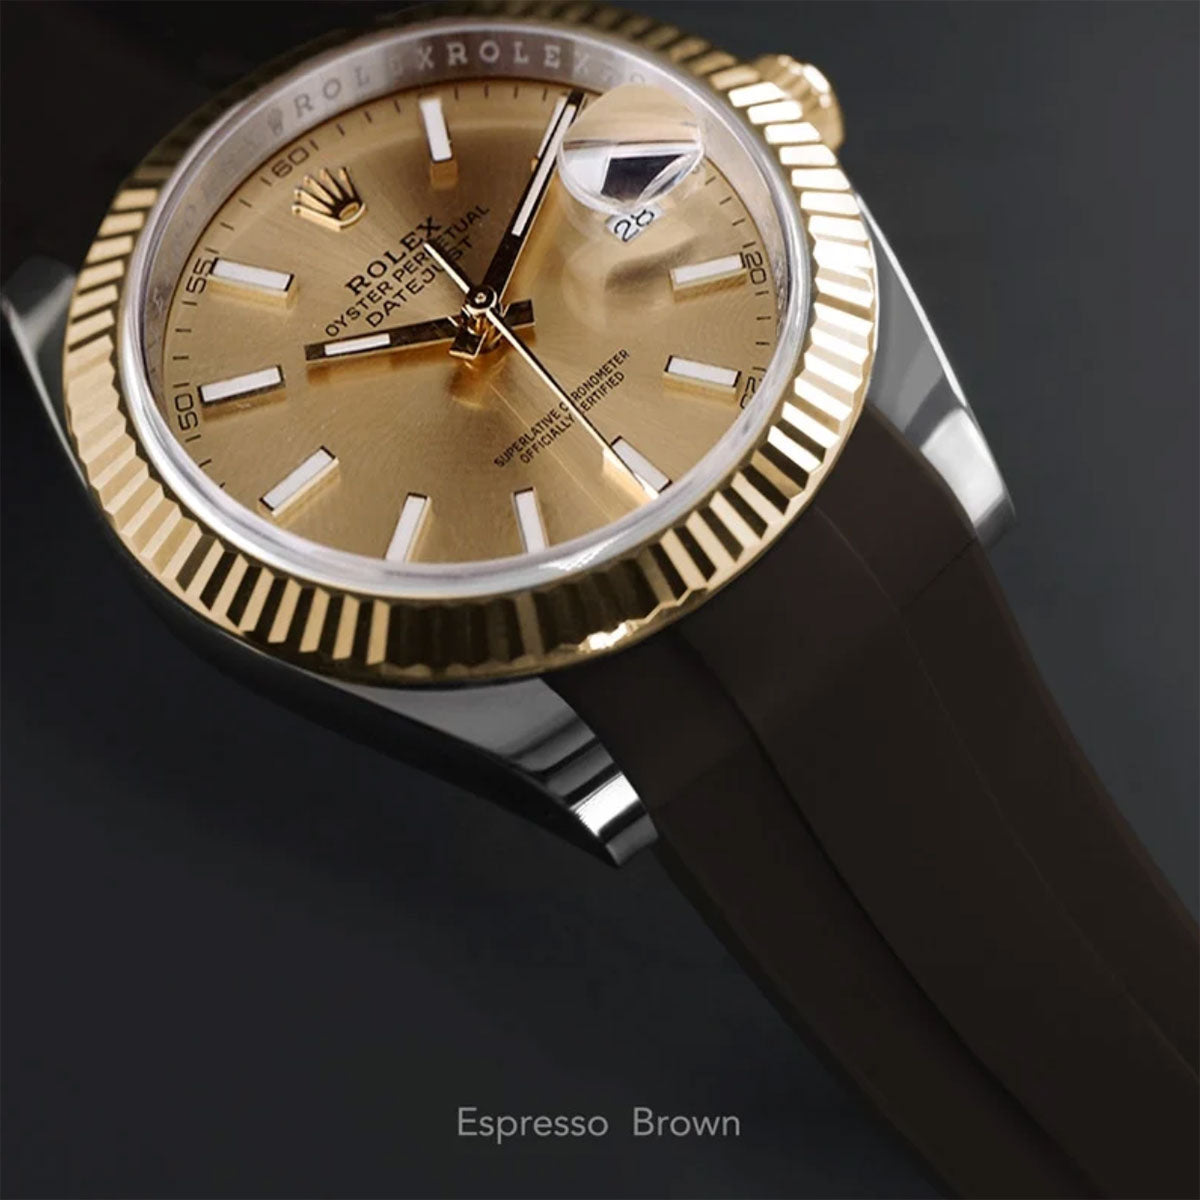 Rolex - Rubber B - Bracelet caoutchouc pour Datejust 41 mm - Série boucle ardillon - watch band leather strap - ABP Concept -